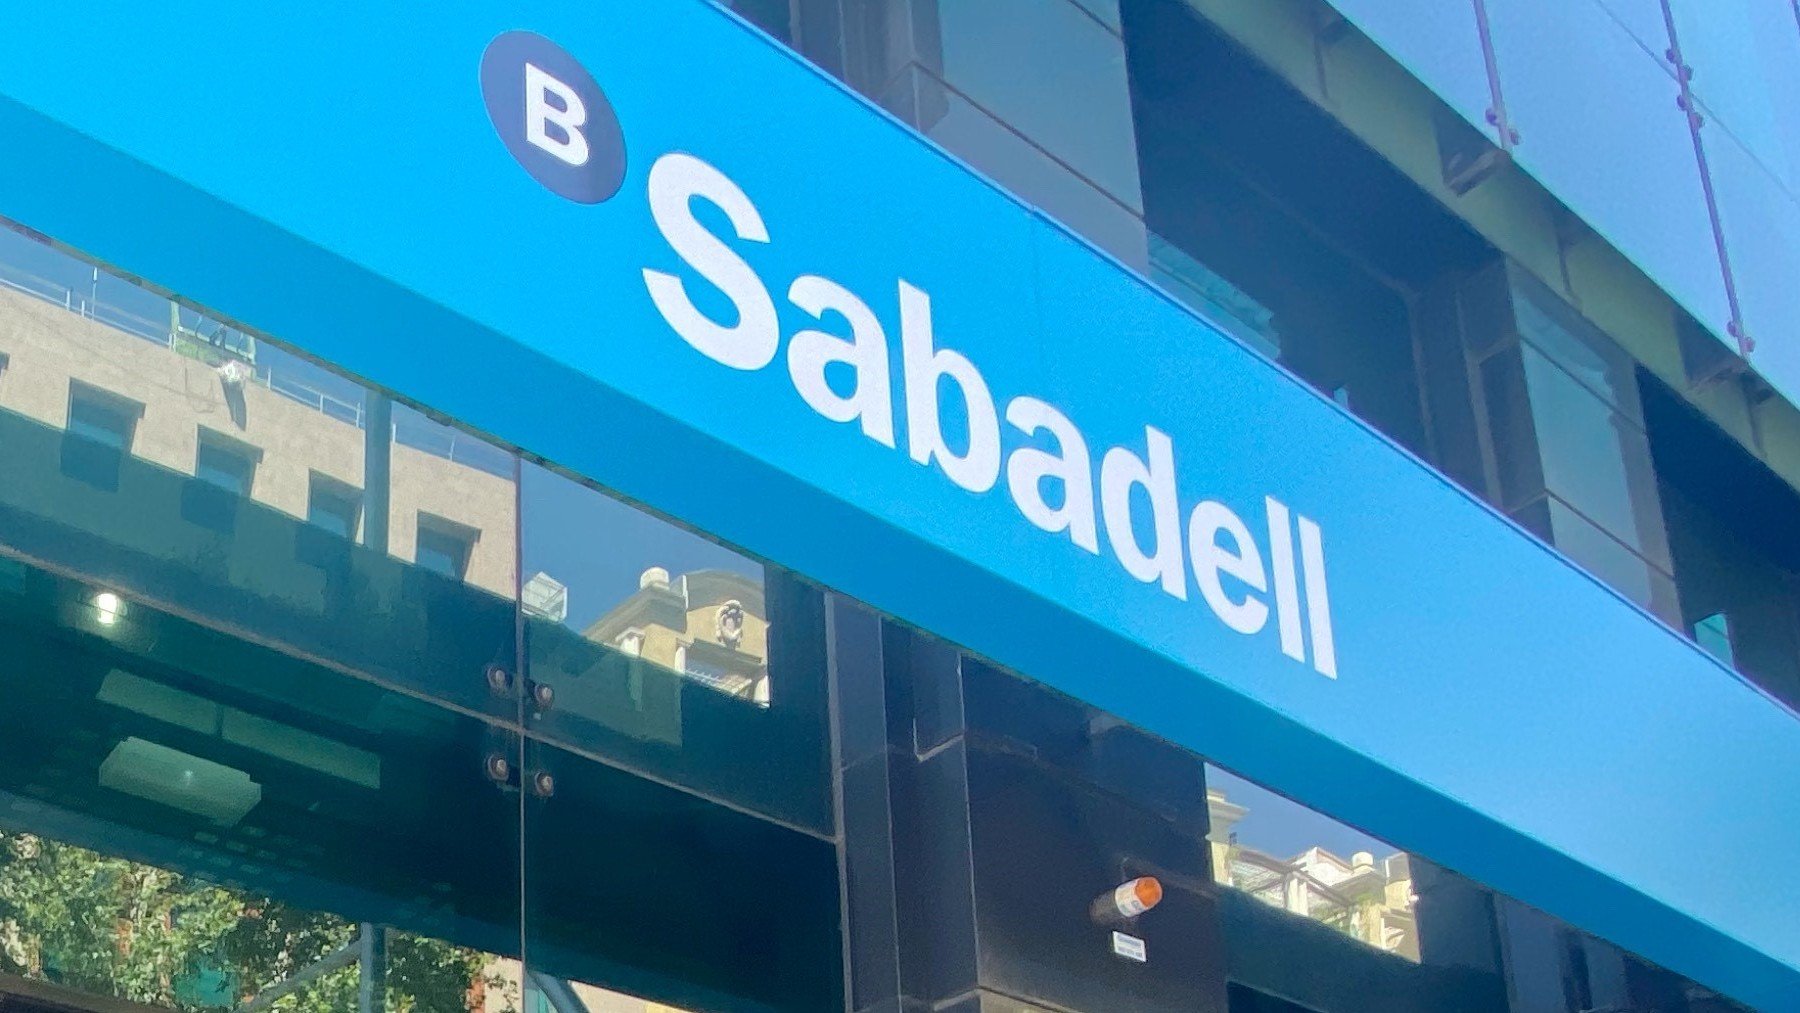 Oficina del Banco Sabadell.